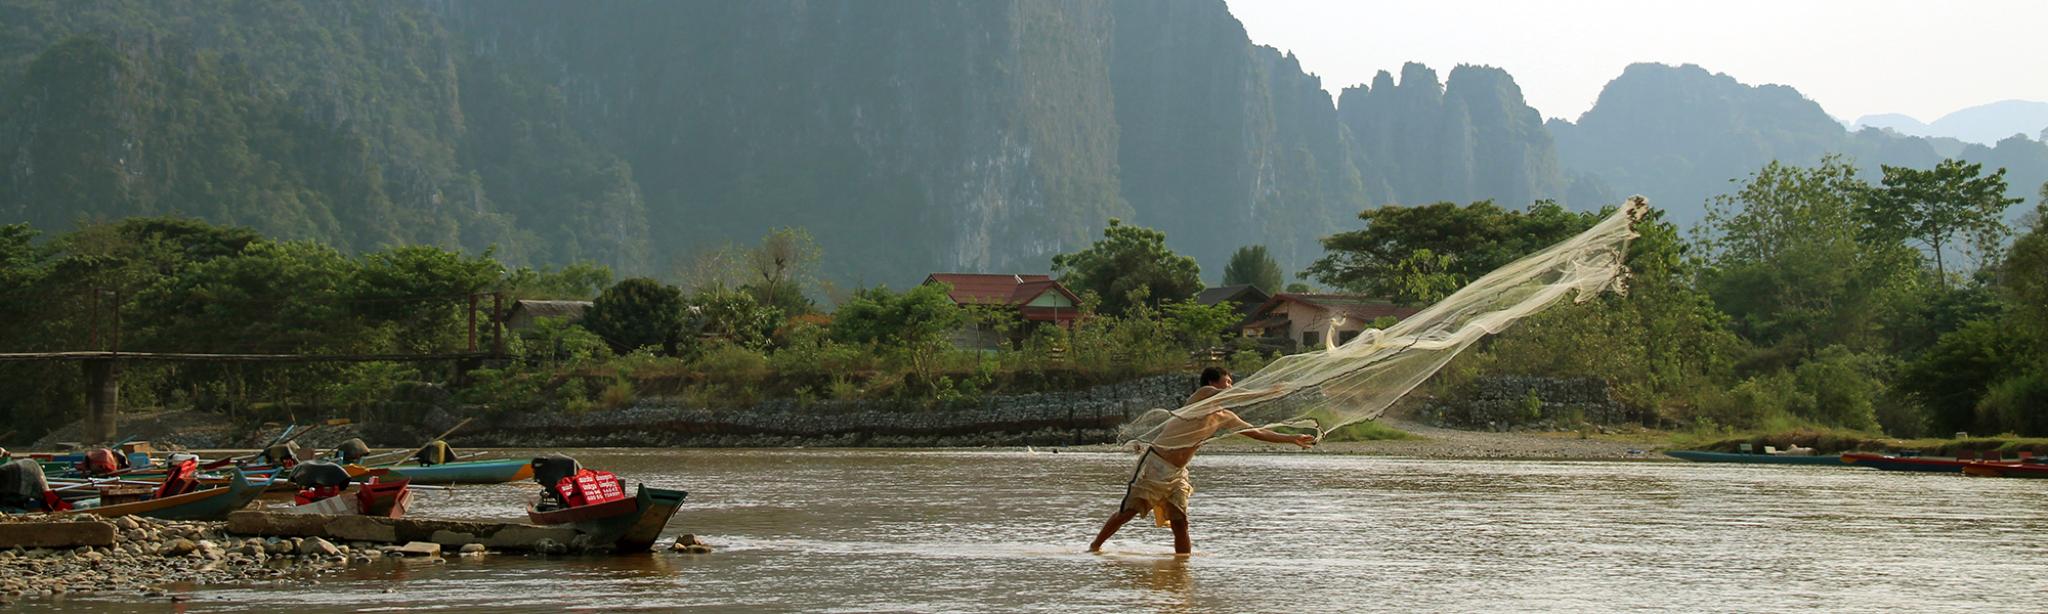 Laos River Fisherman - Namsong River